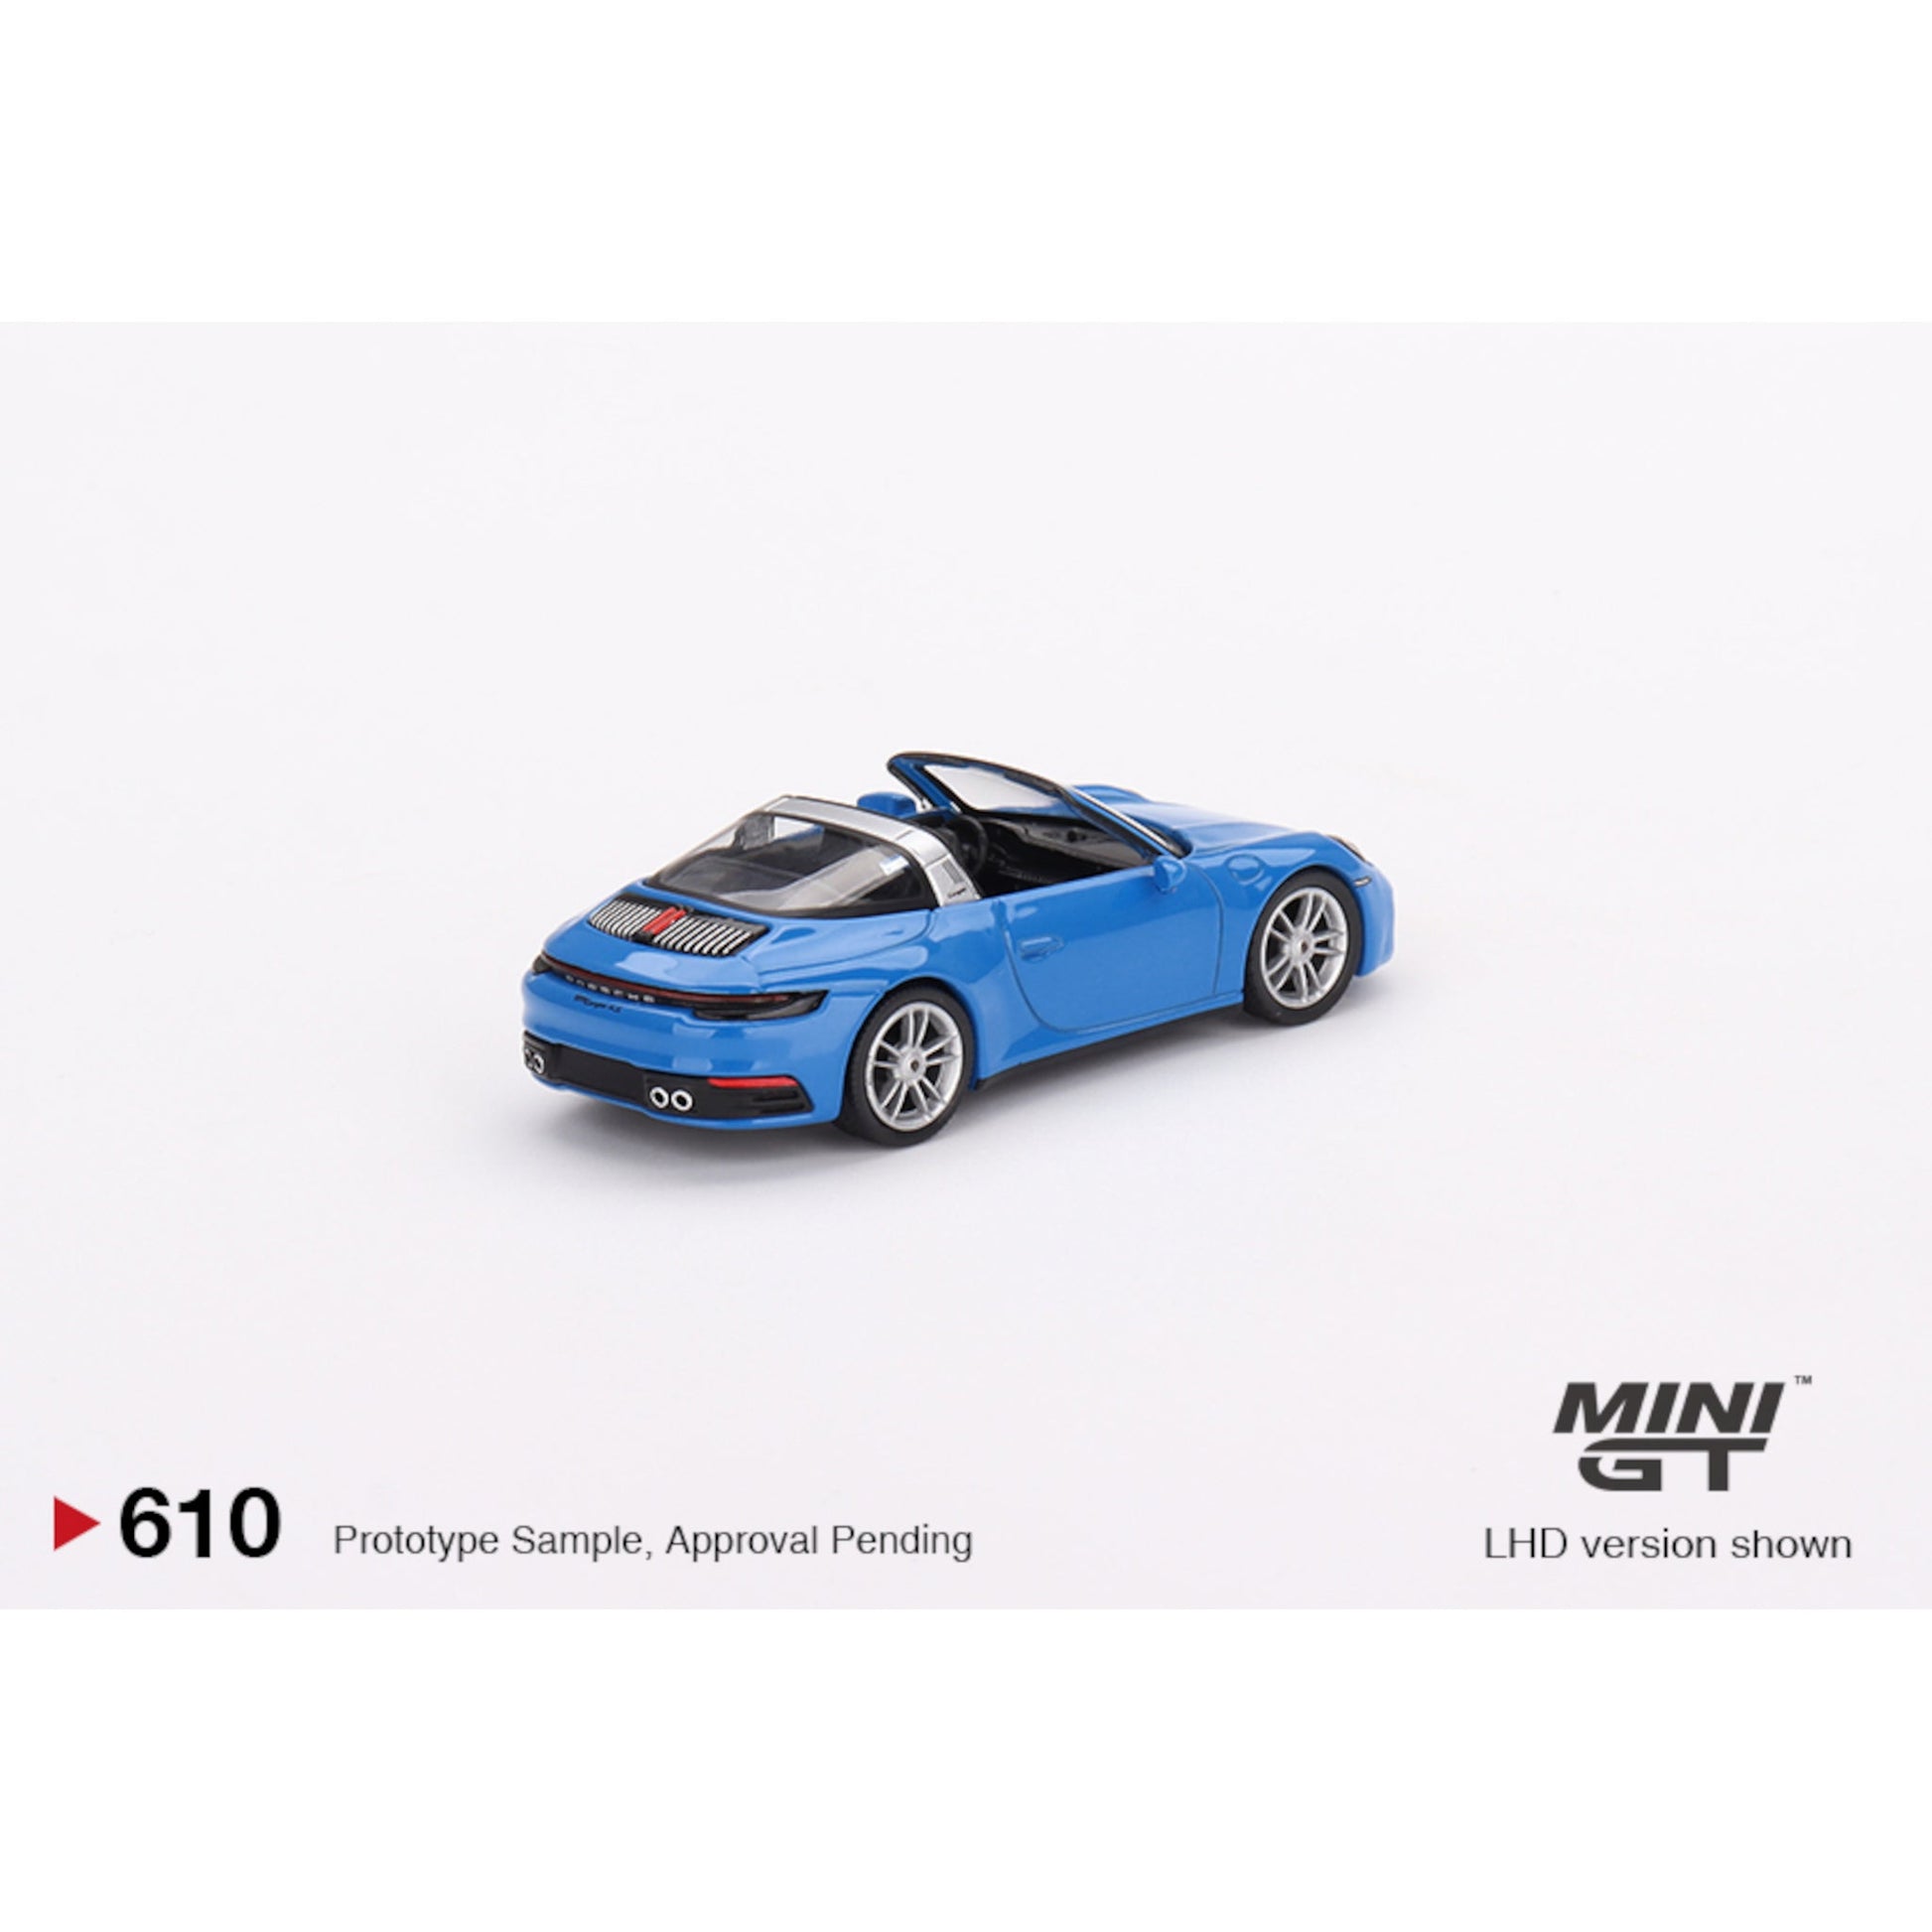 Porsche 911 Targa 4S RHD Shark Blue Mini GT 1/64 - MGT00610